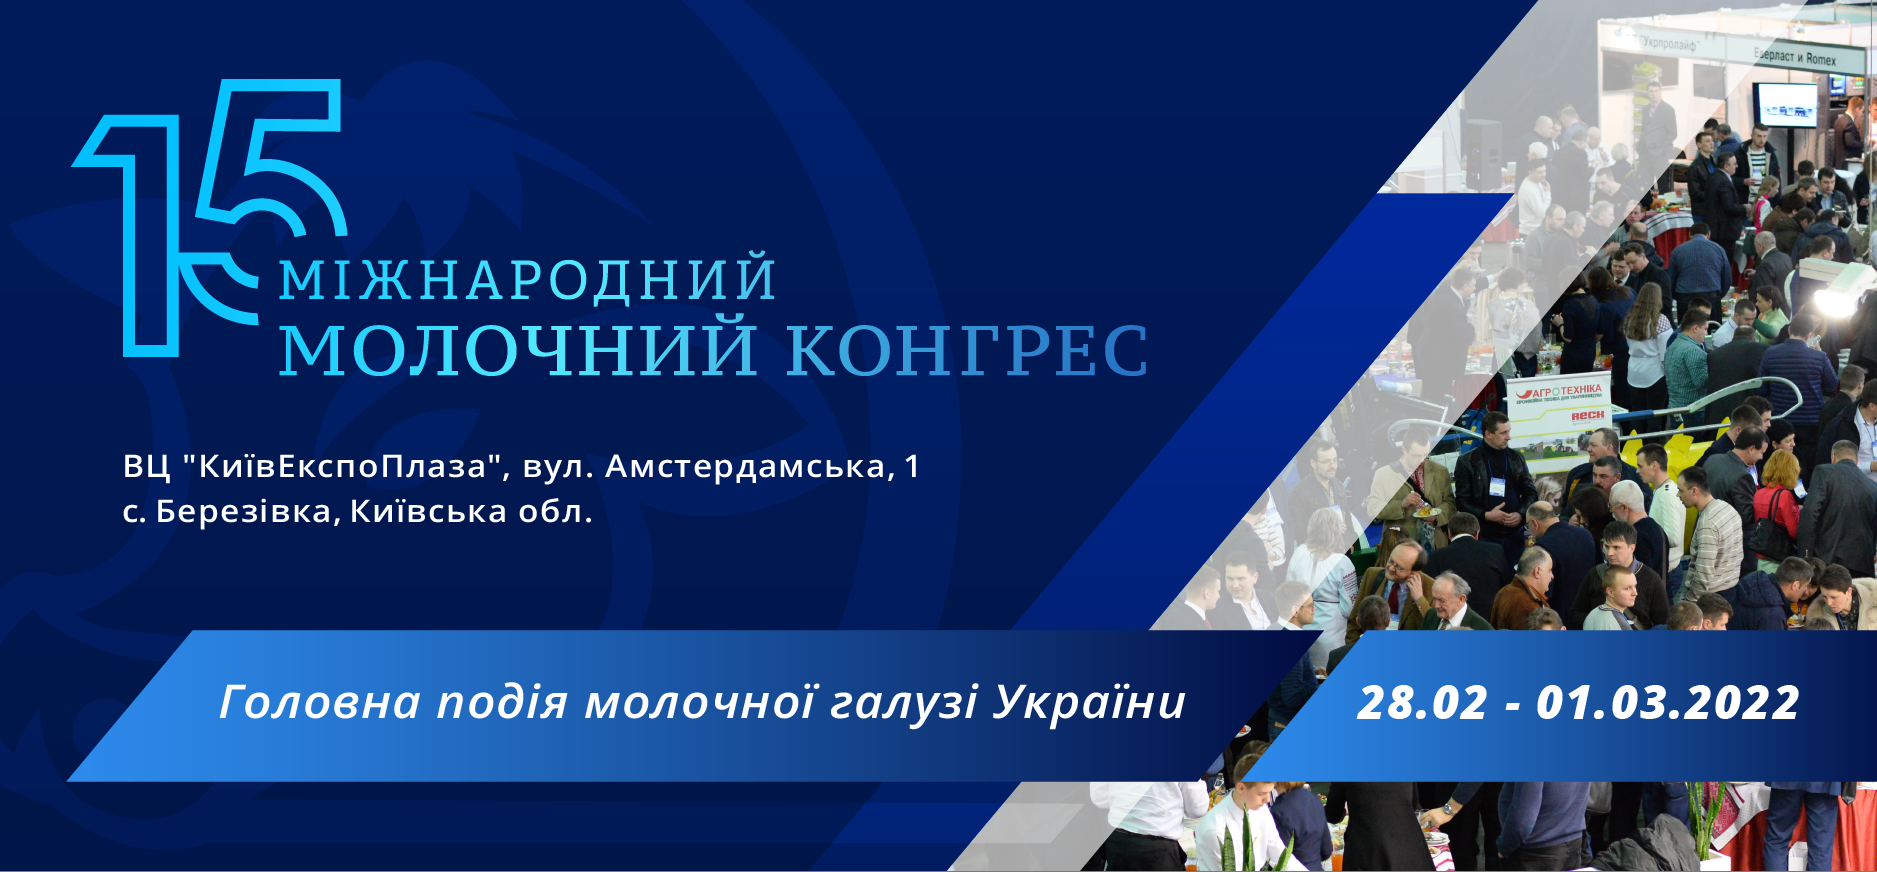 В Києві пройде XV Міжнародний молочний конгрес. Пресреліз